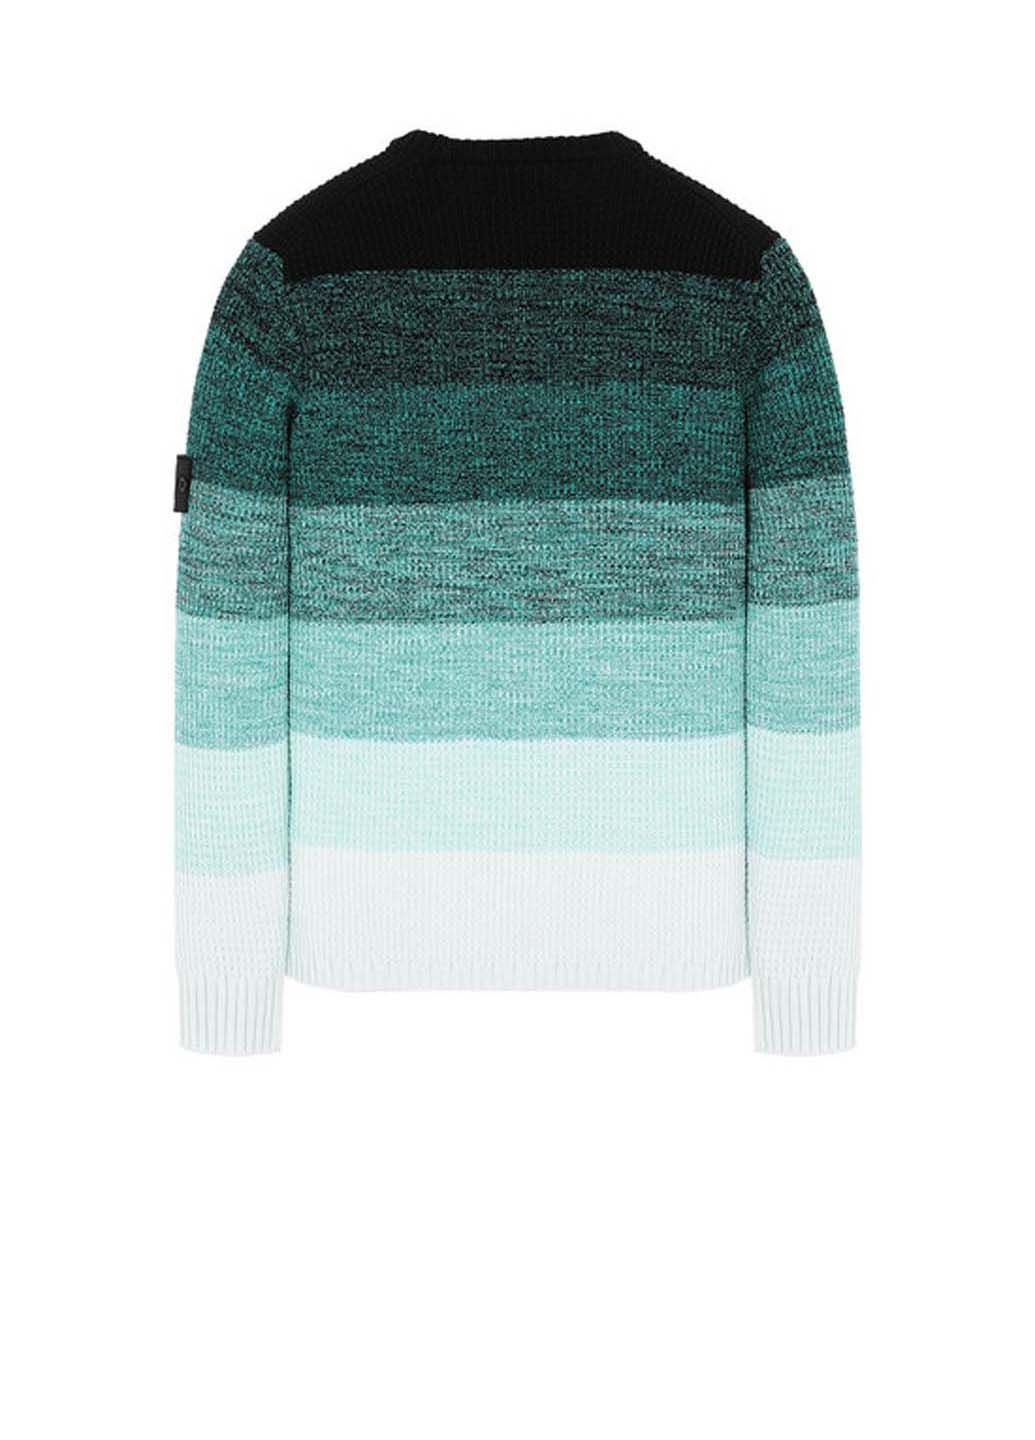 Синий демисезонный свитер 507a4 shadow project crew knitwear sweater Stone Island